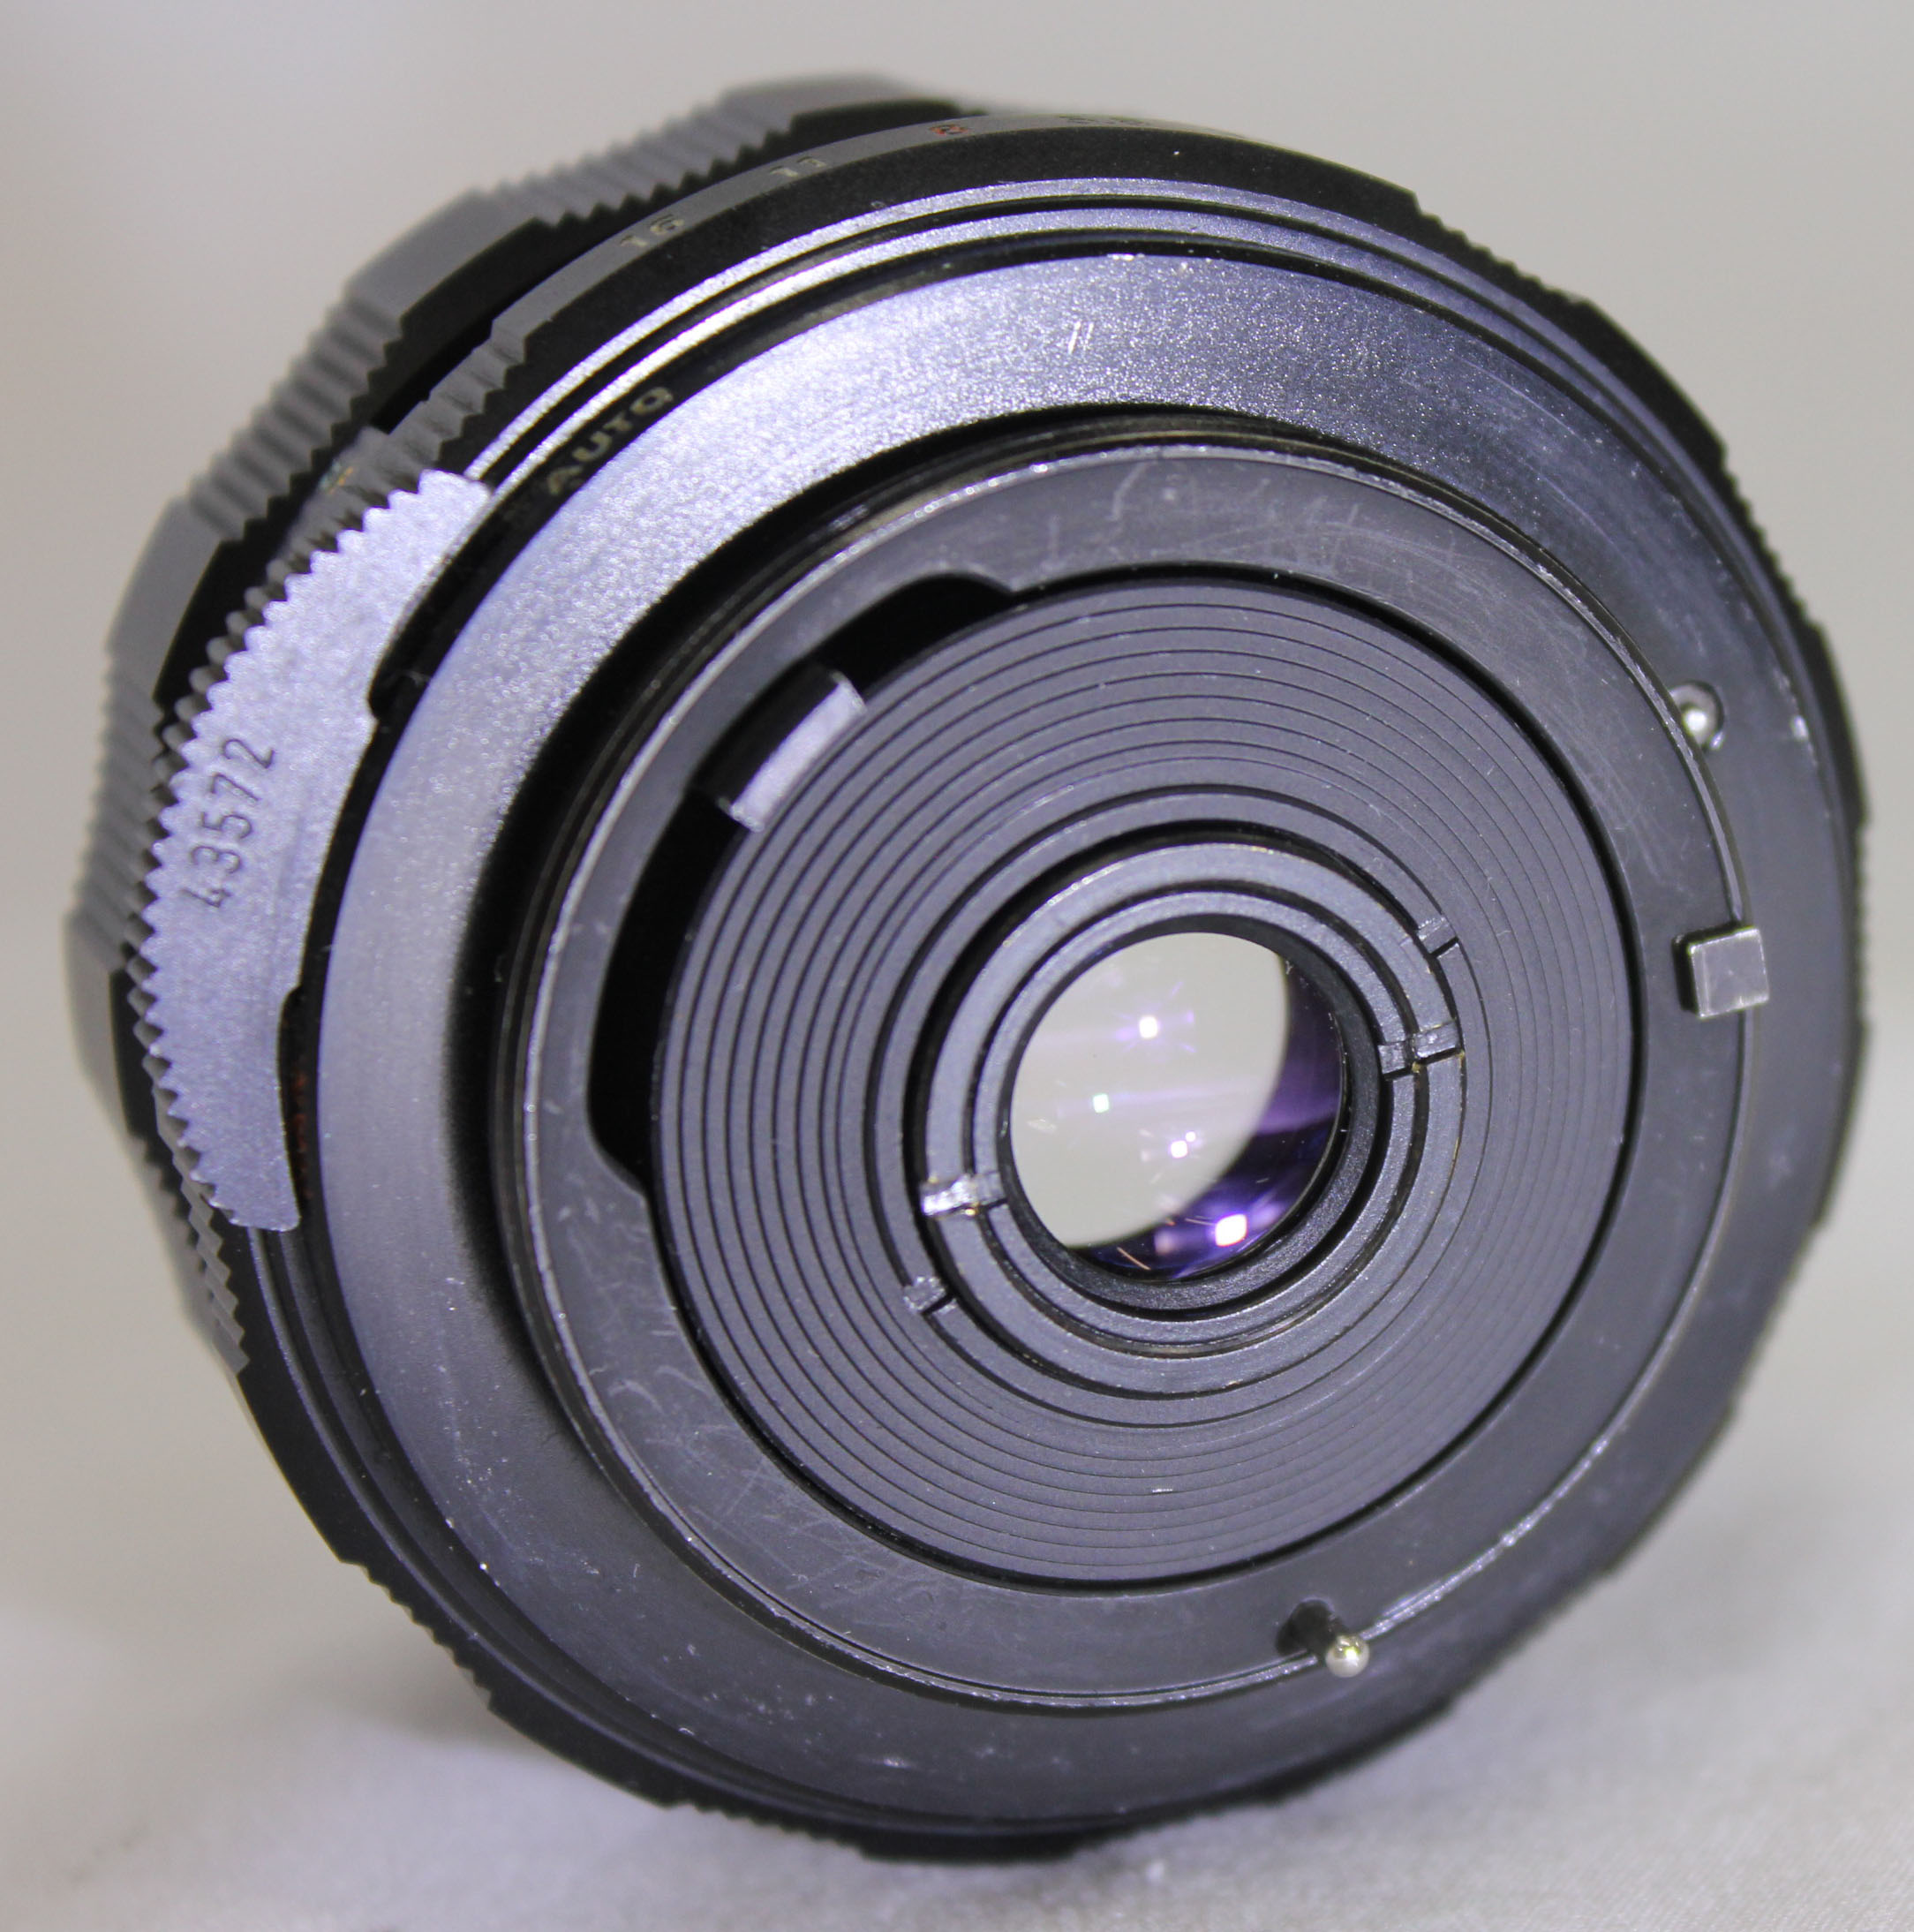 Asahi Pentax Spotmatic F SPF 35mm SLR Camera w/ SMC Super-Multi-Coated  Takumar 35mm F/3.5 Lens from Japan (C2374) | Big Fish J-Camera (Big Fish 